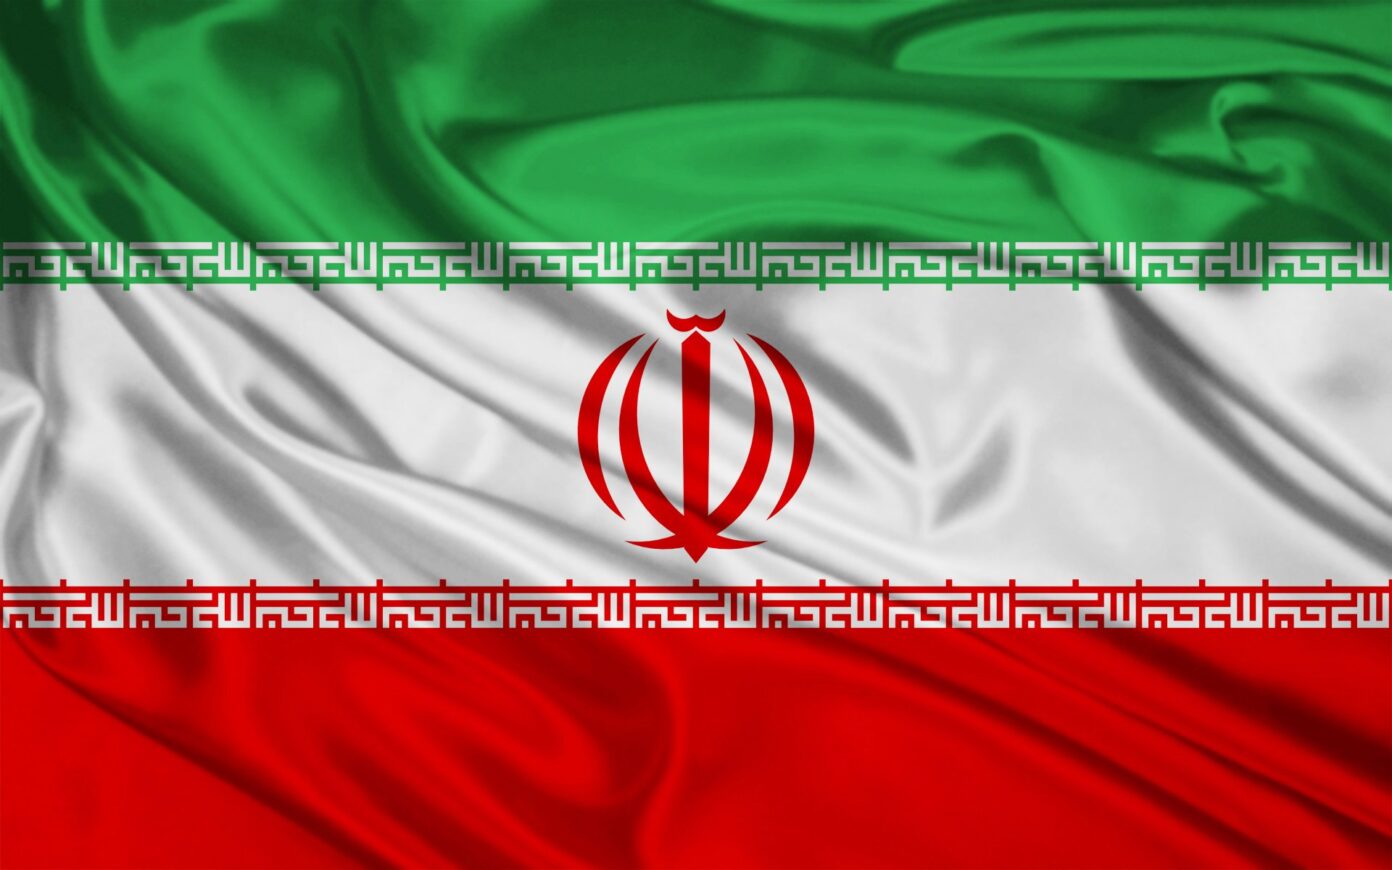 Harƙallar nukiliya: Iran ta ƙi amincewa ta tattauna da Amurka da Turai